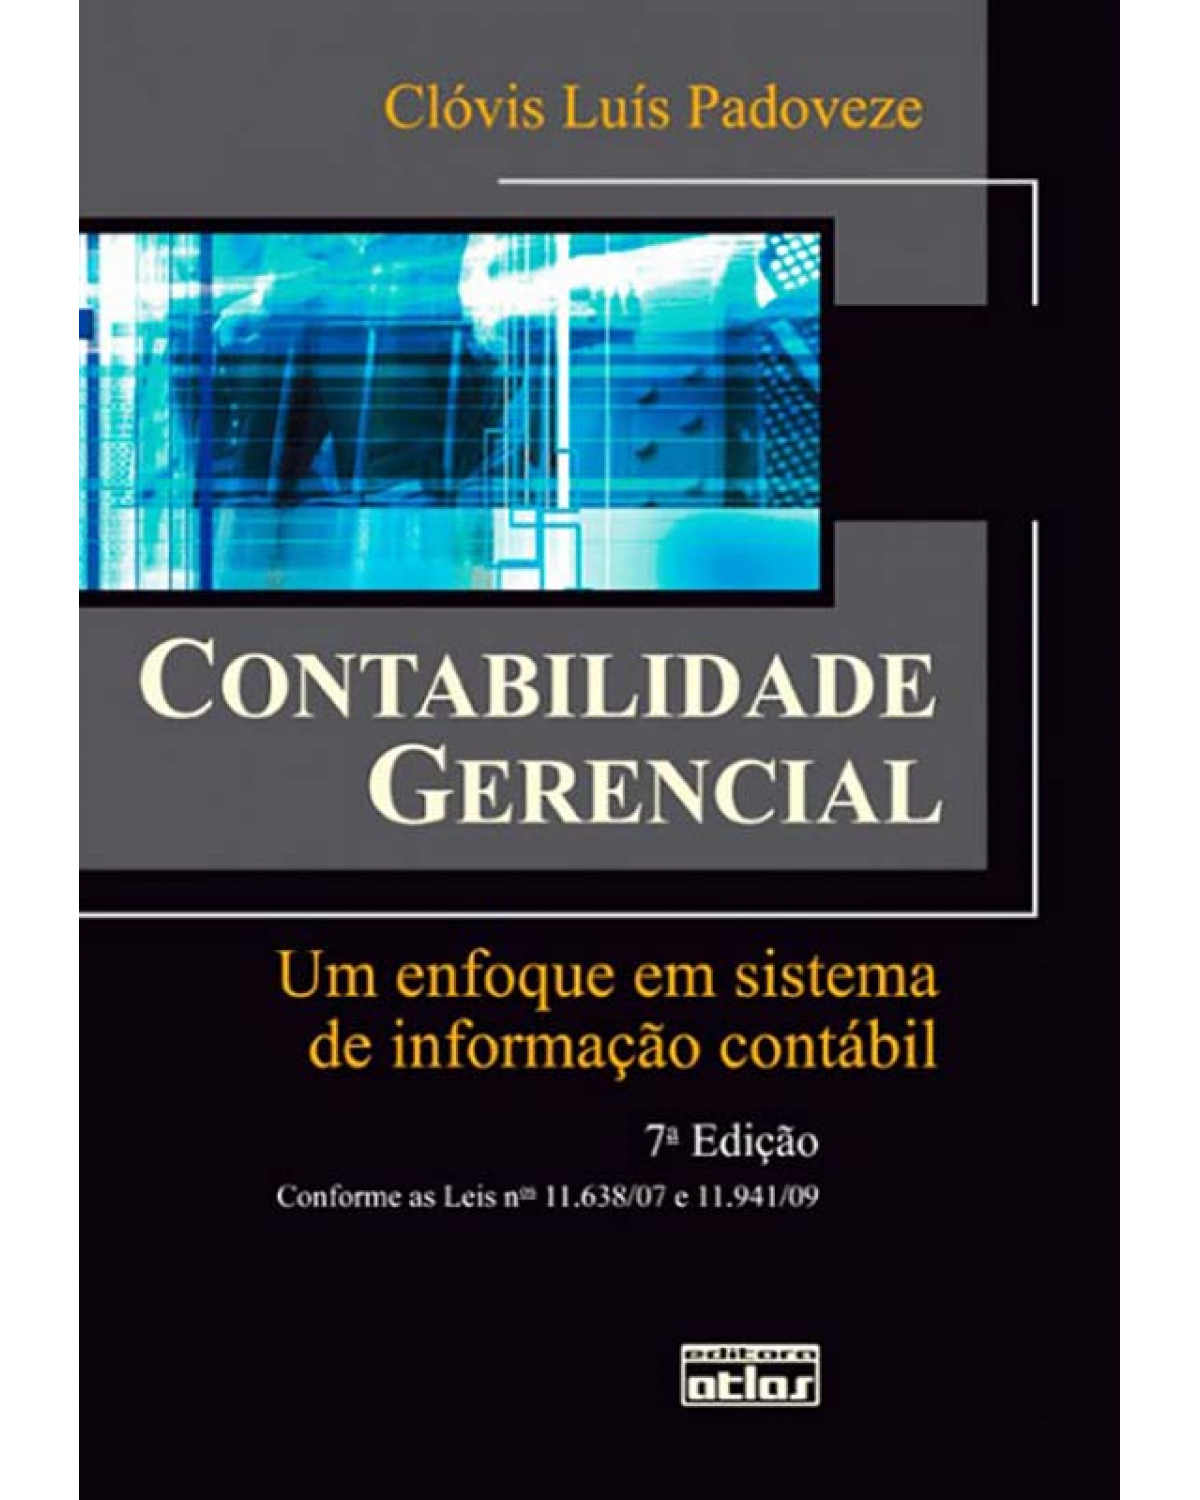 Contabilidade gerencial - Um enfoque em sistema de informação contábil - 7ª Edição | 2010